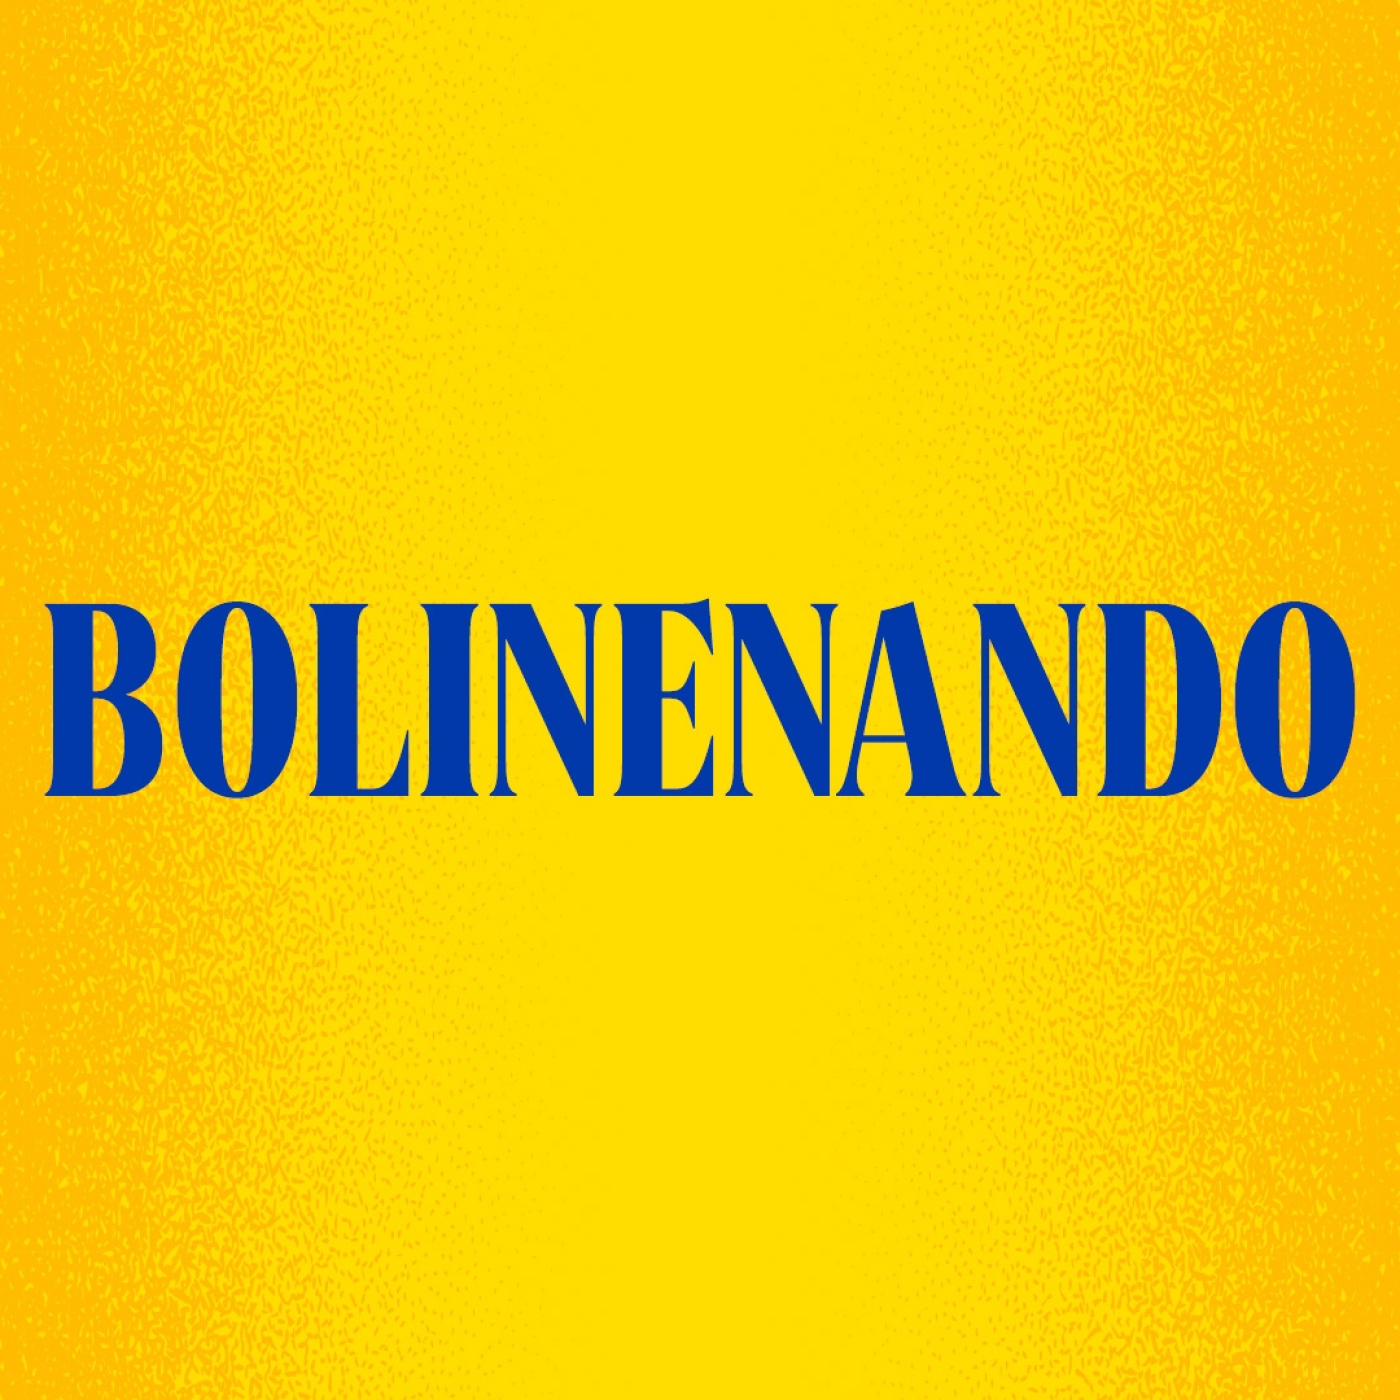 BOLINEANDO